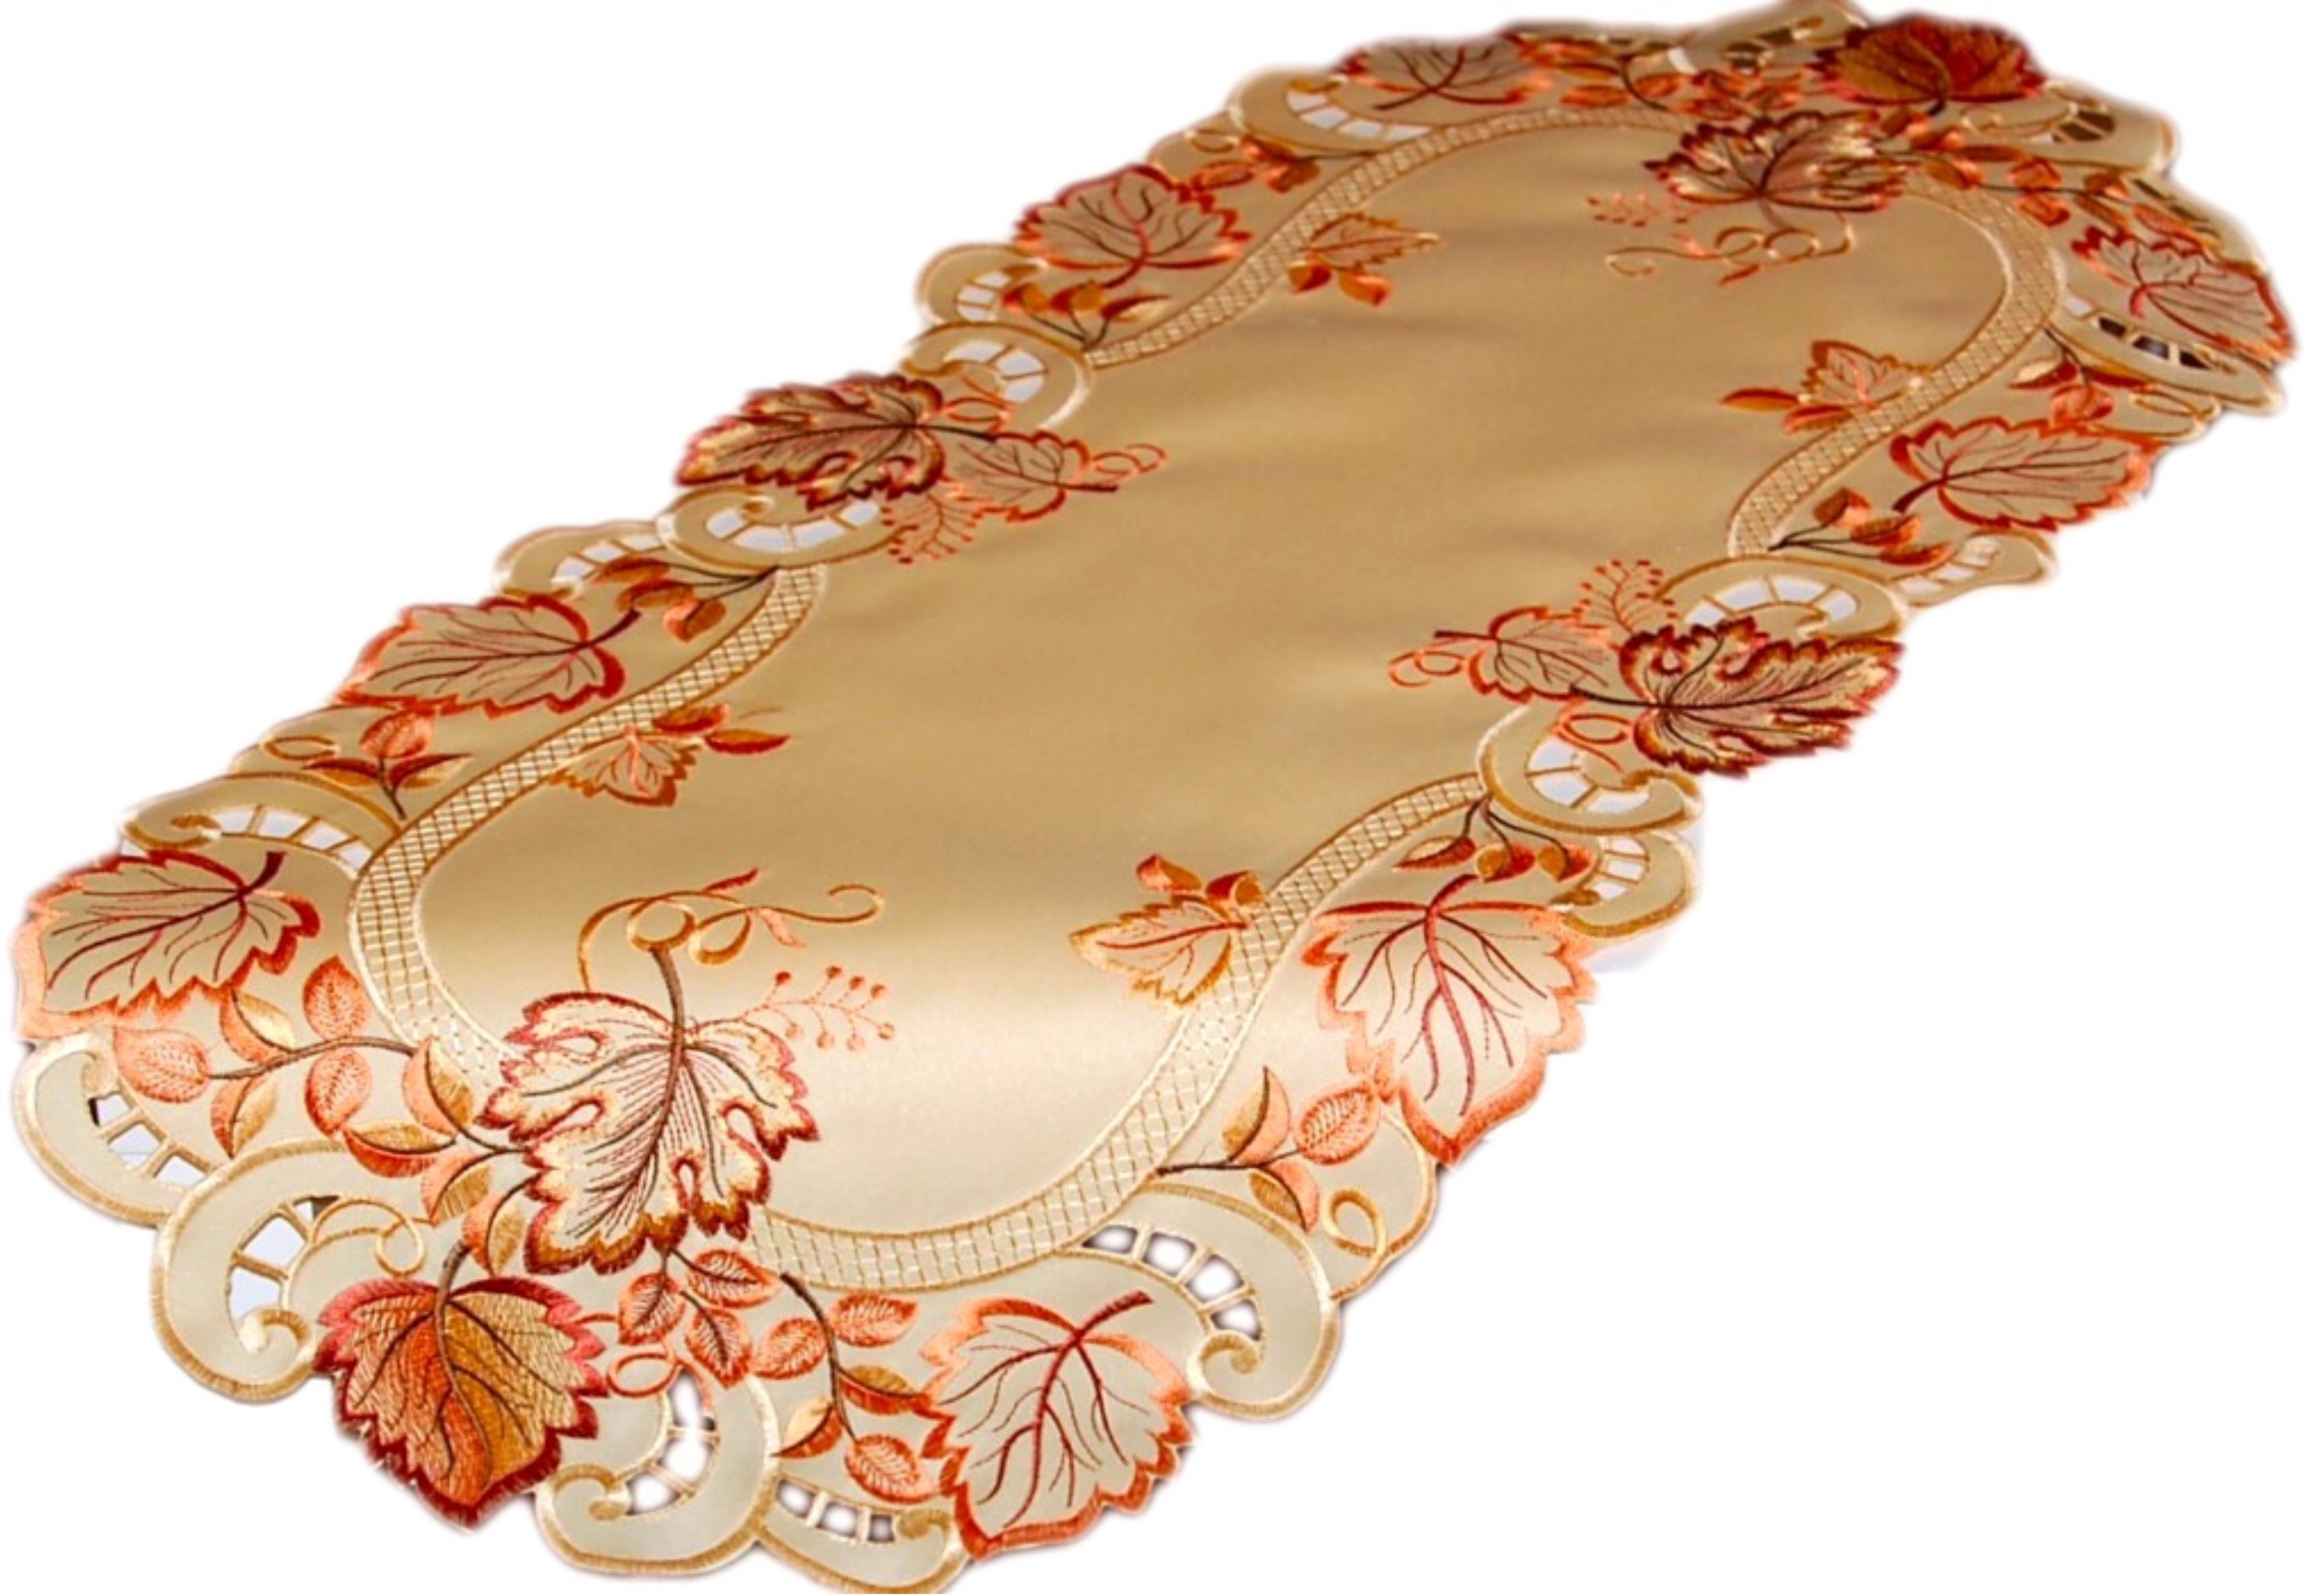 Mitteldecke | Orange Decke Stickerei Tischdecke Läufer Deckchen eBay HERBST Tischläufer